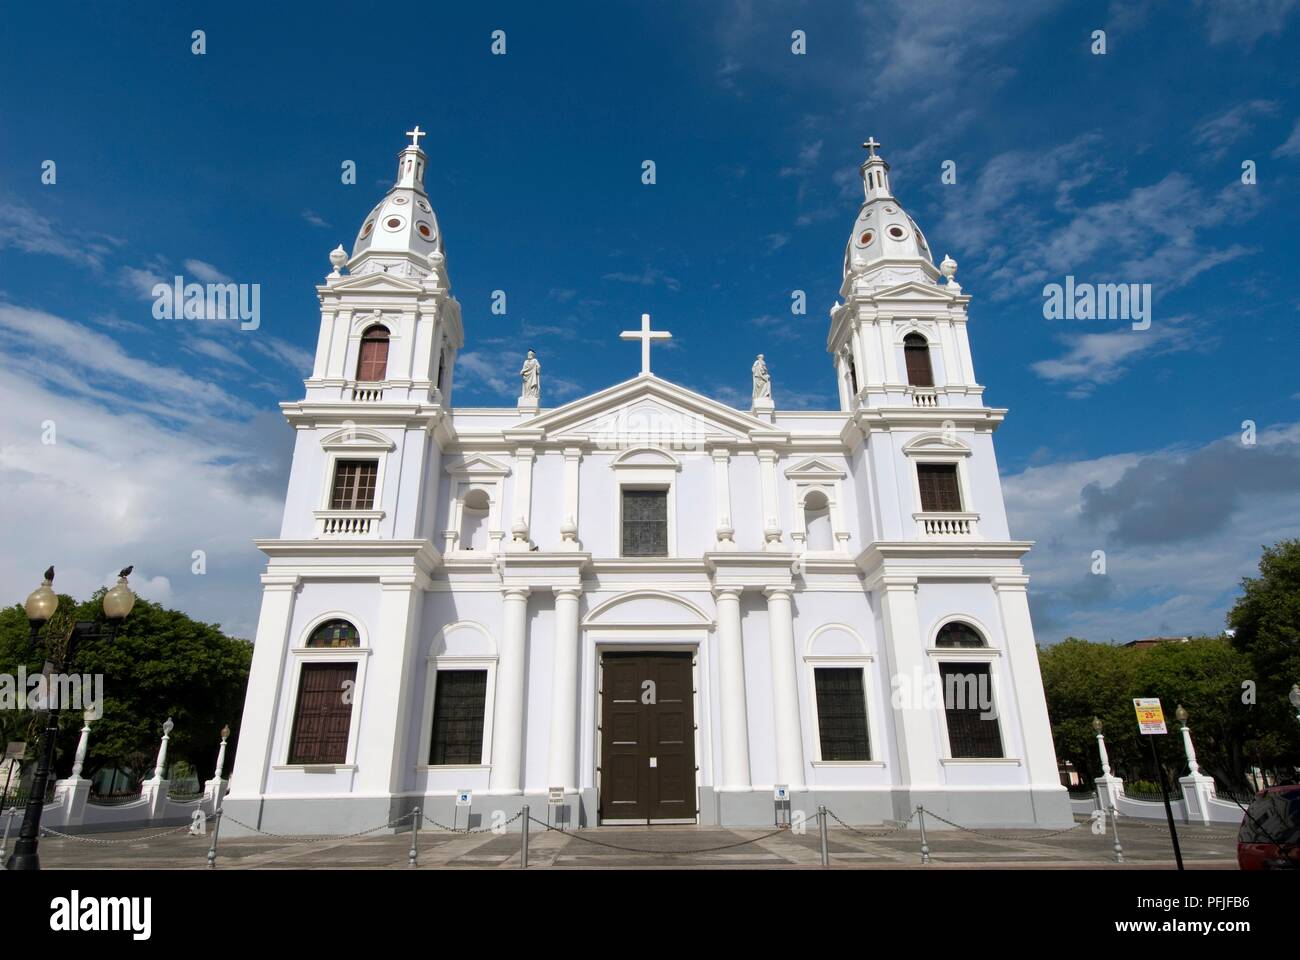 Puerto Rico, Ponce, Plaza de las Delicias, Cathedral Nuestra Senora de Guadalupe, neoclassical facade, low angle view Stock Photo